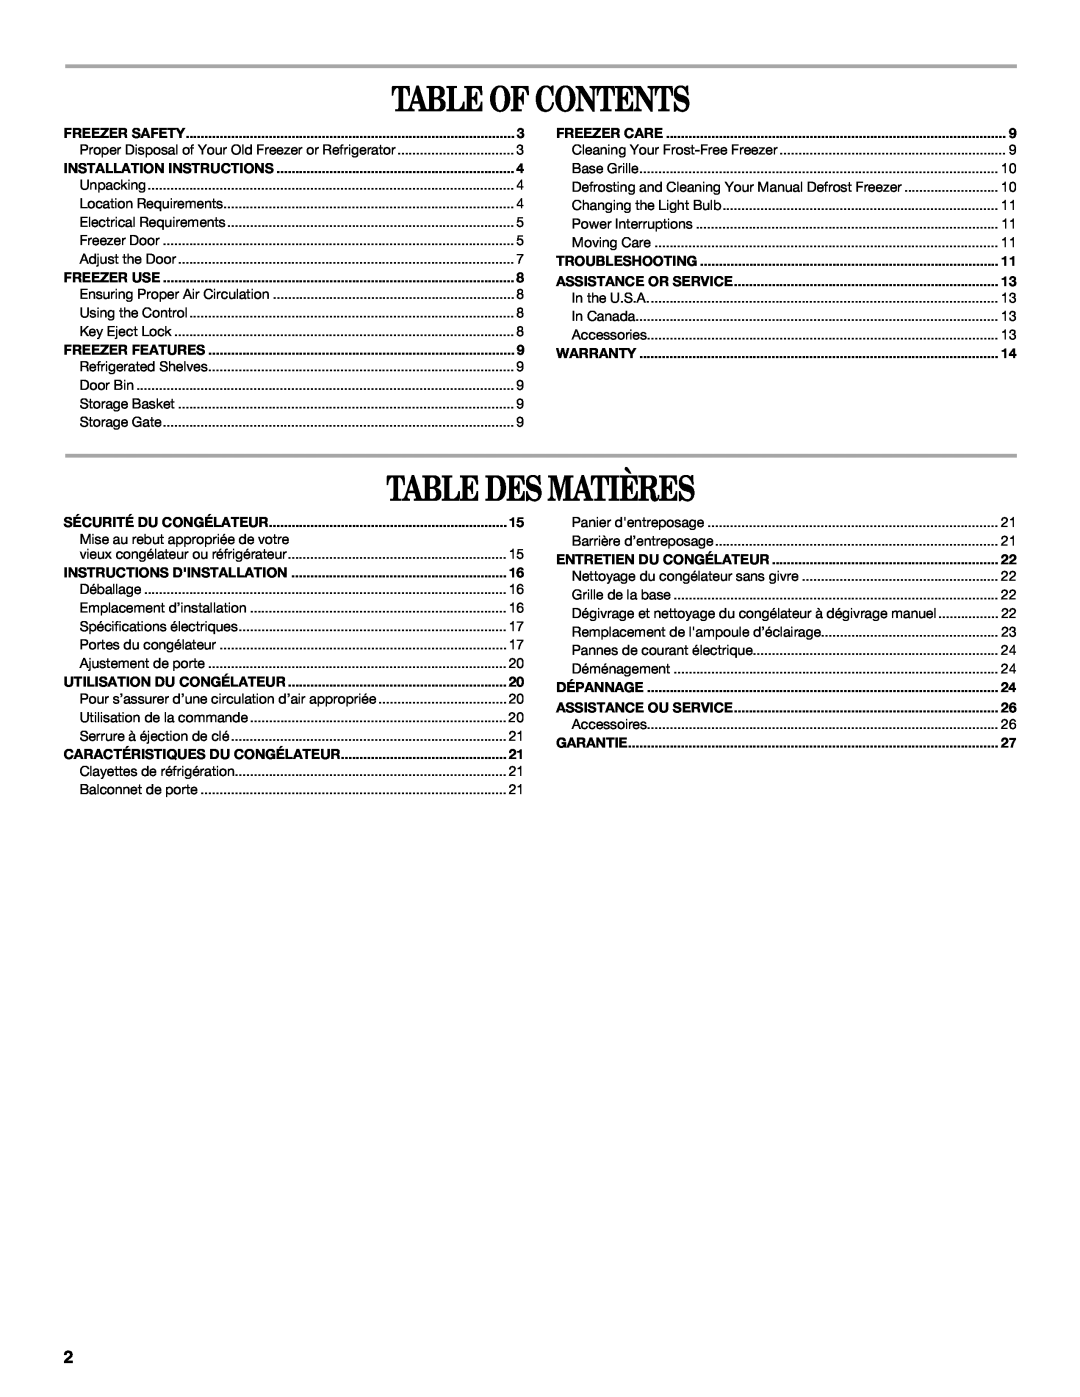 Danby DUFM505WDB, DUFM454WDB Table Of Contents, Table Des Matières, Installation Instructions, Sécurité Du Congélateur 